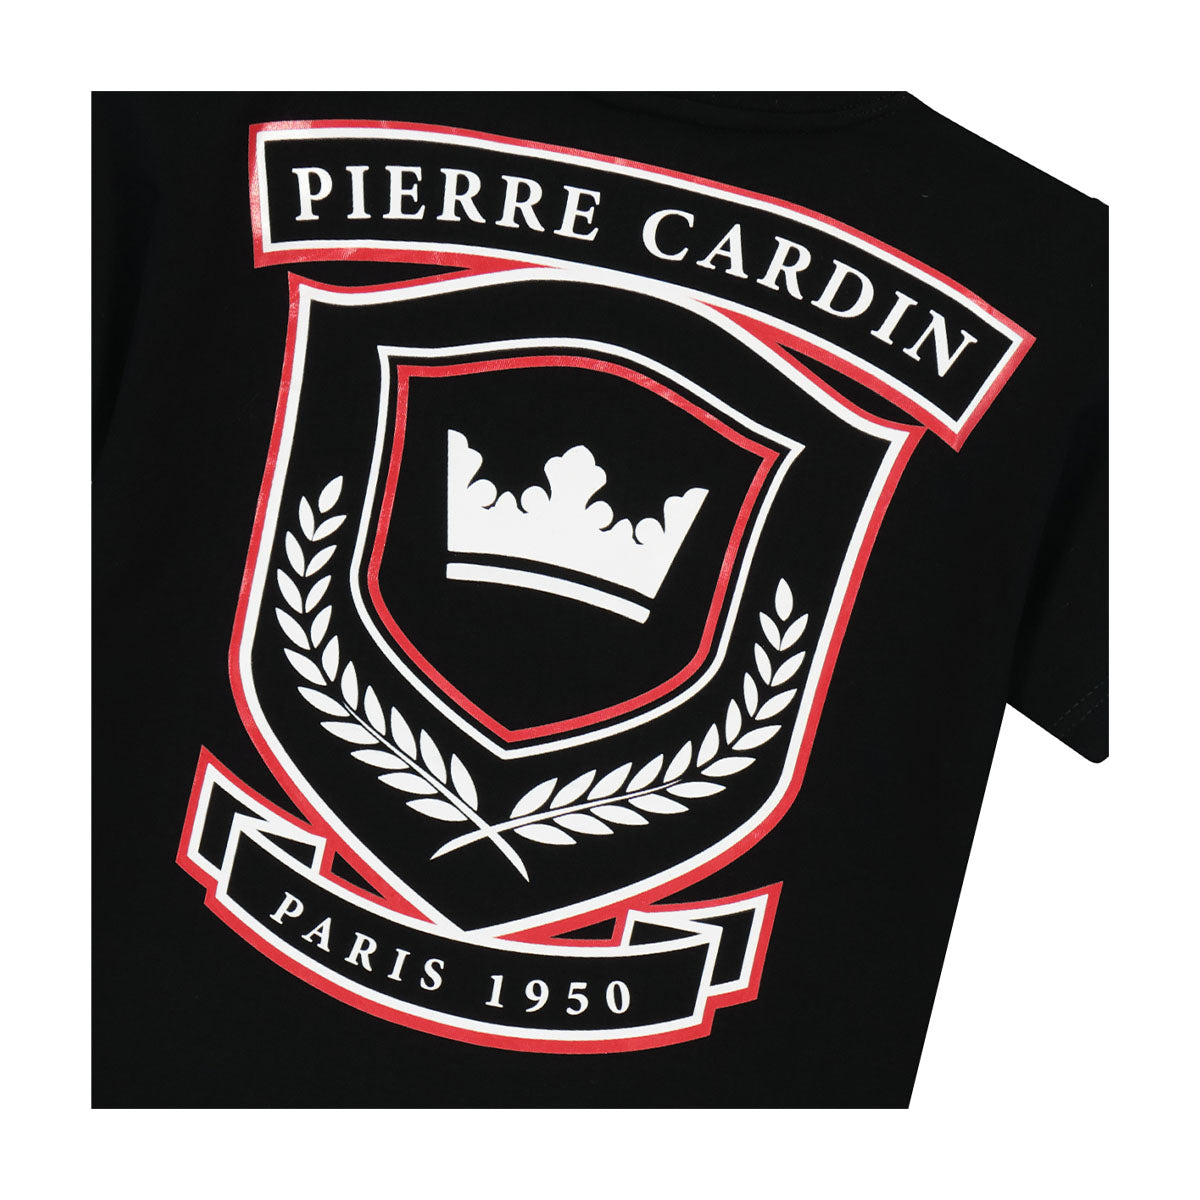 חולצת טי שרט PIERRE CARDIN PARIS 1950 לילדים